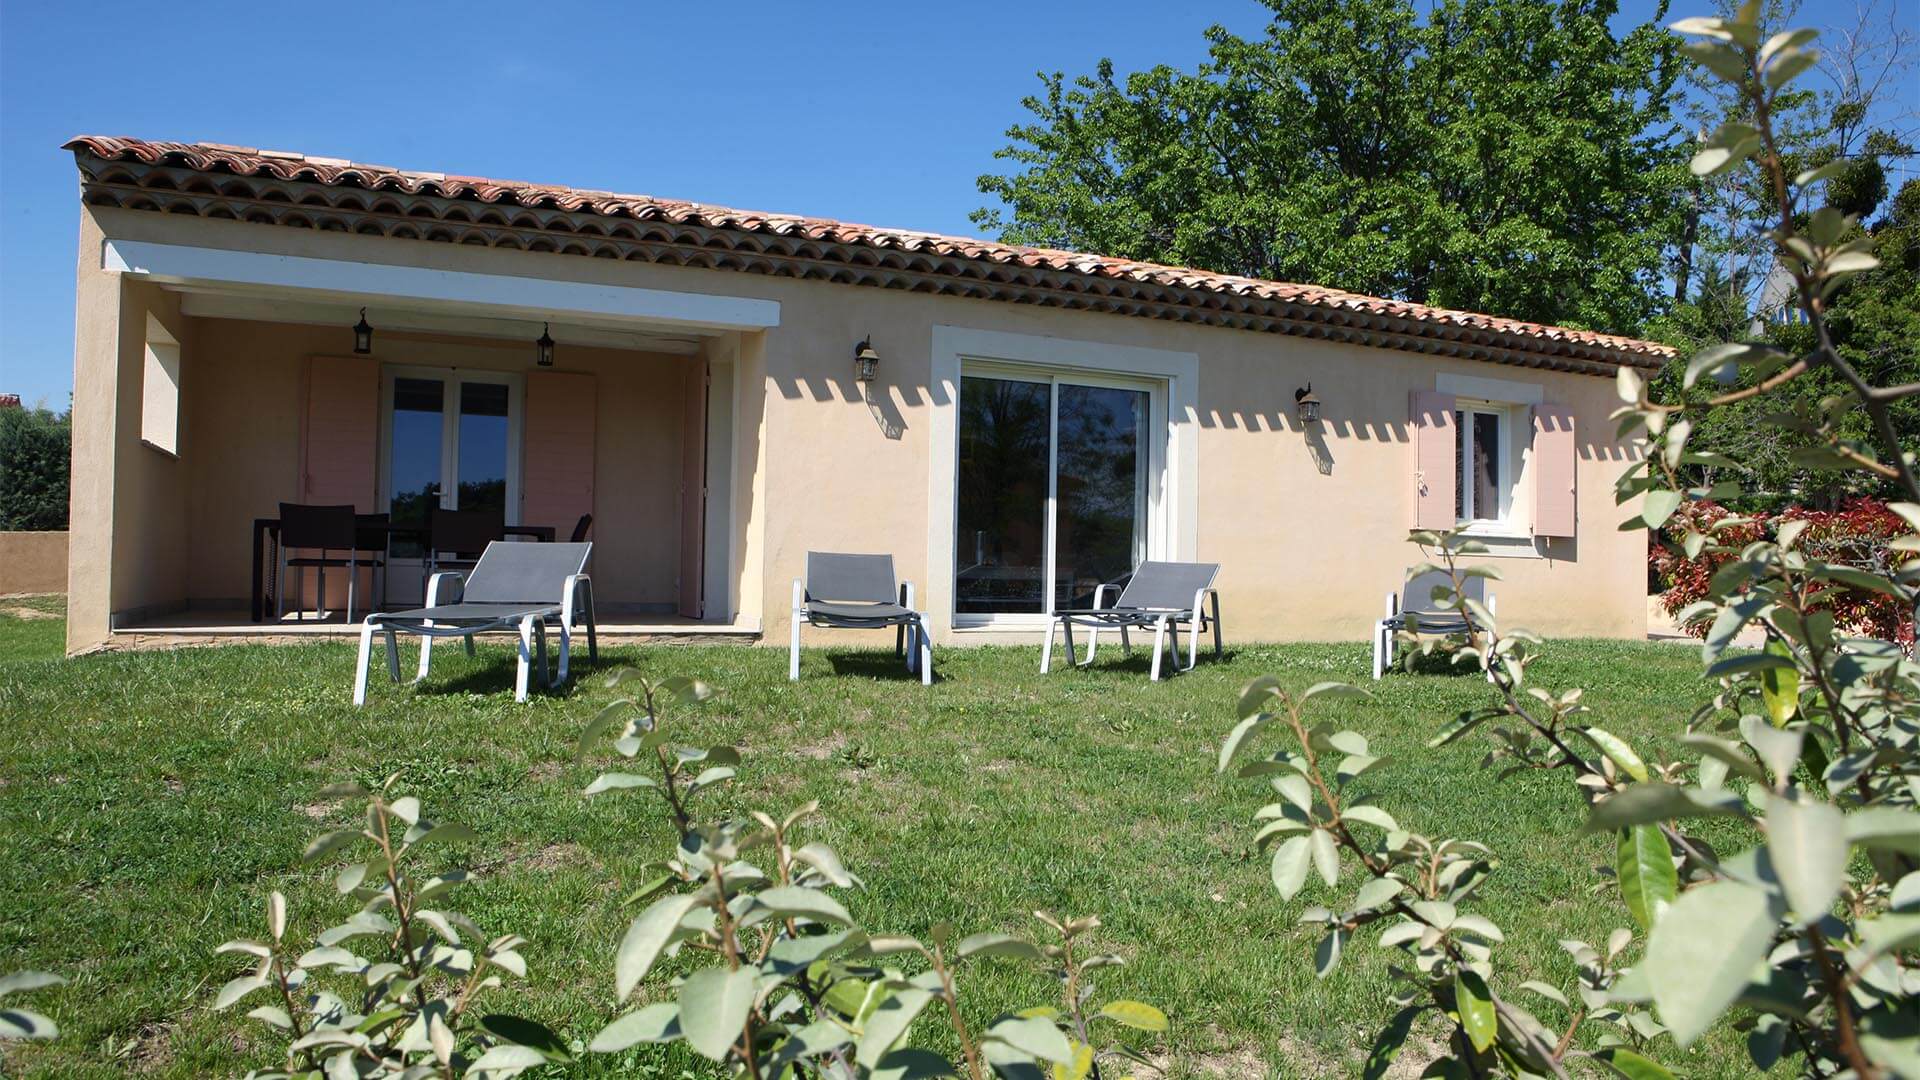 Location vacances Forcalquier | Villa le mûrier blanc | Terrasse couverte et jardin